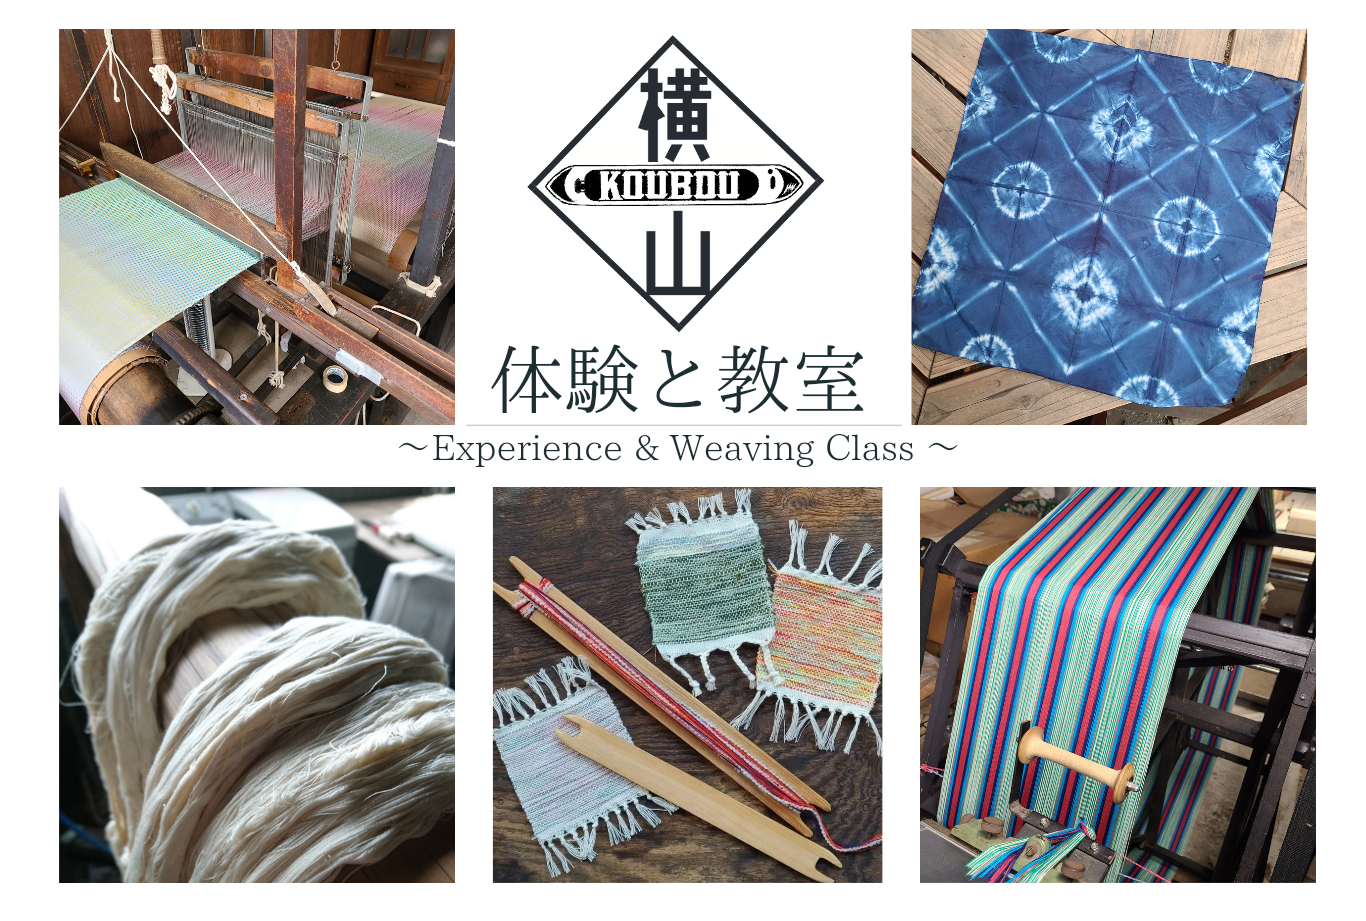 体験と教室【Experience ＆Weaving CLASS】体験学習・教室について